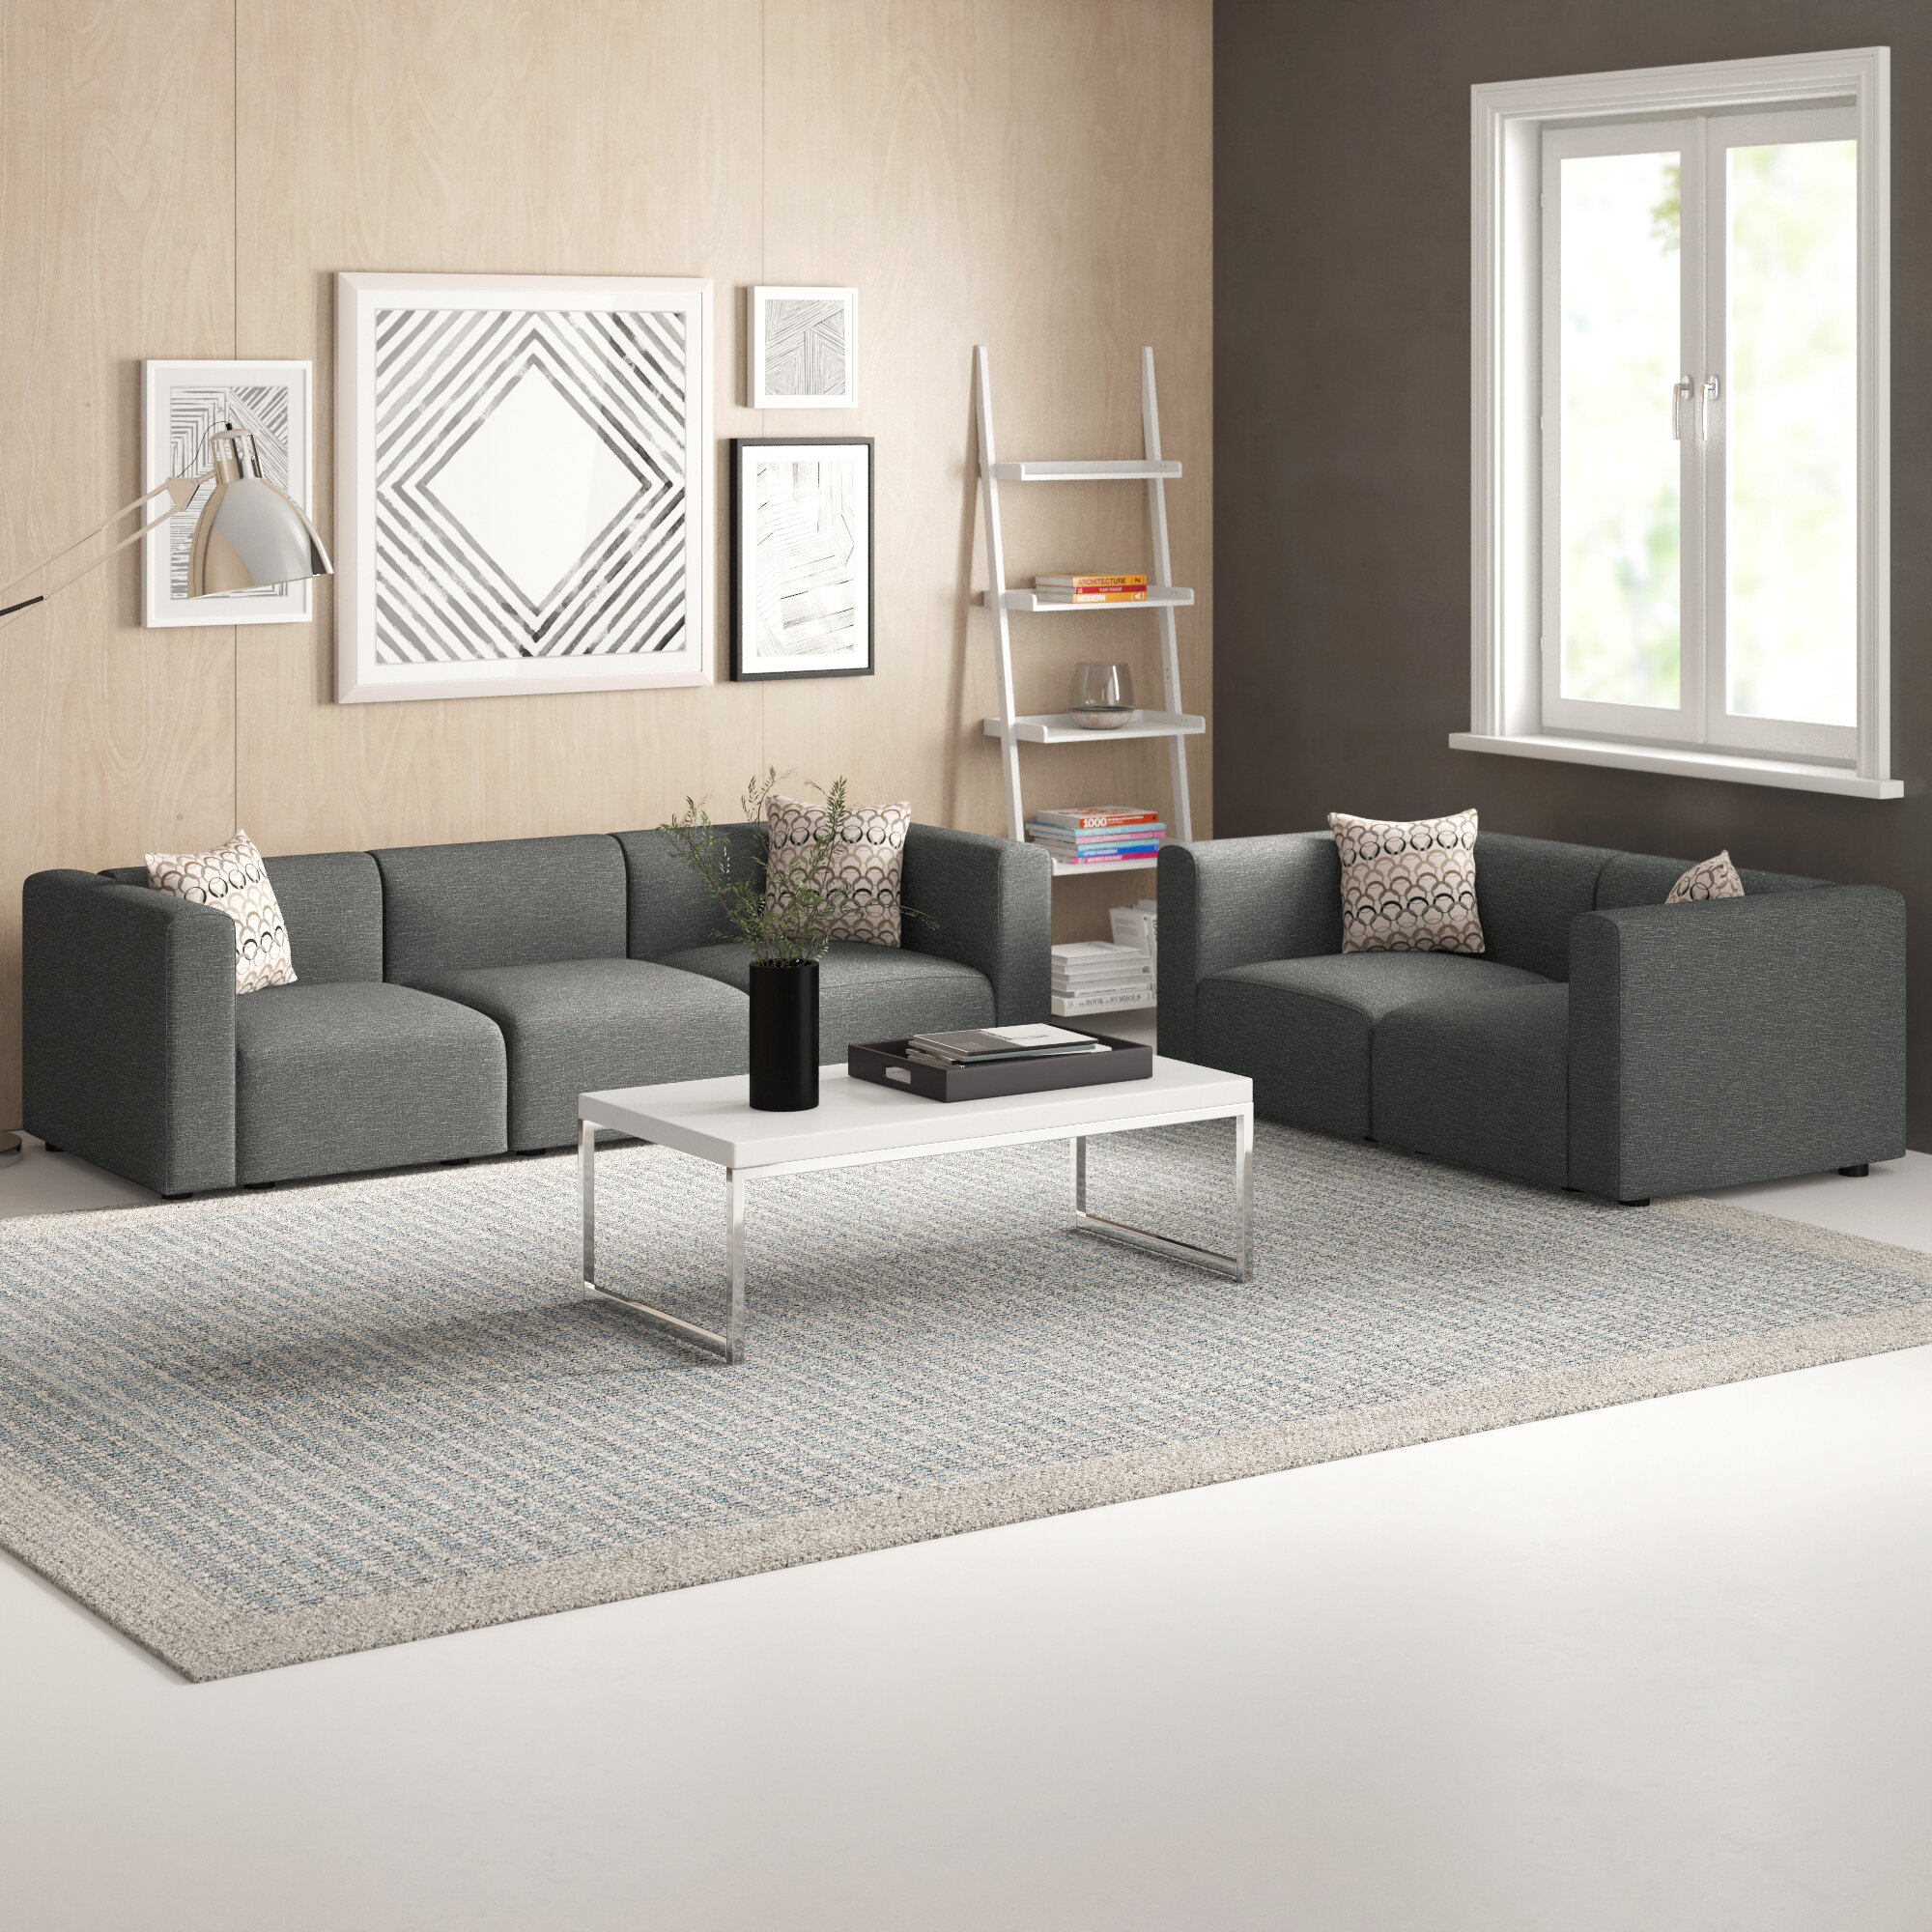 Zipcode Design Nash 2 Piece Modular Living Room Sofa Set Reviews Wayfair